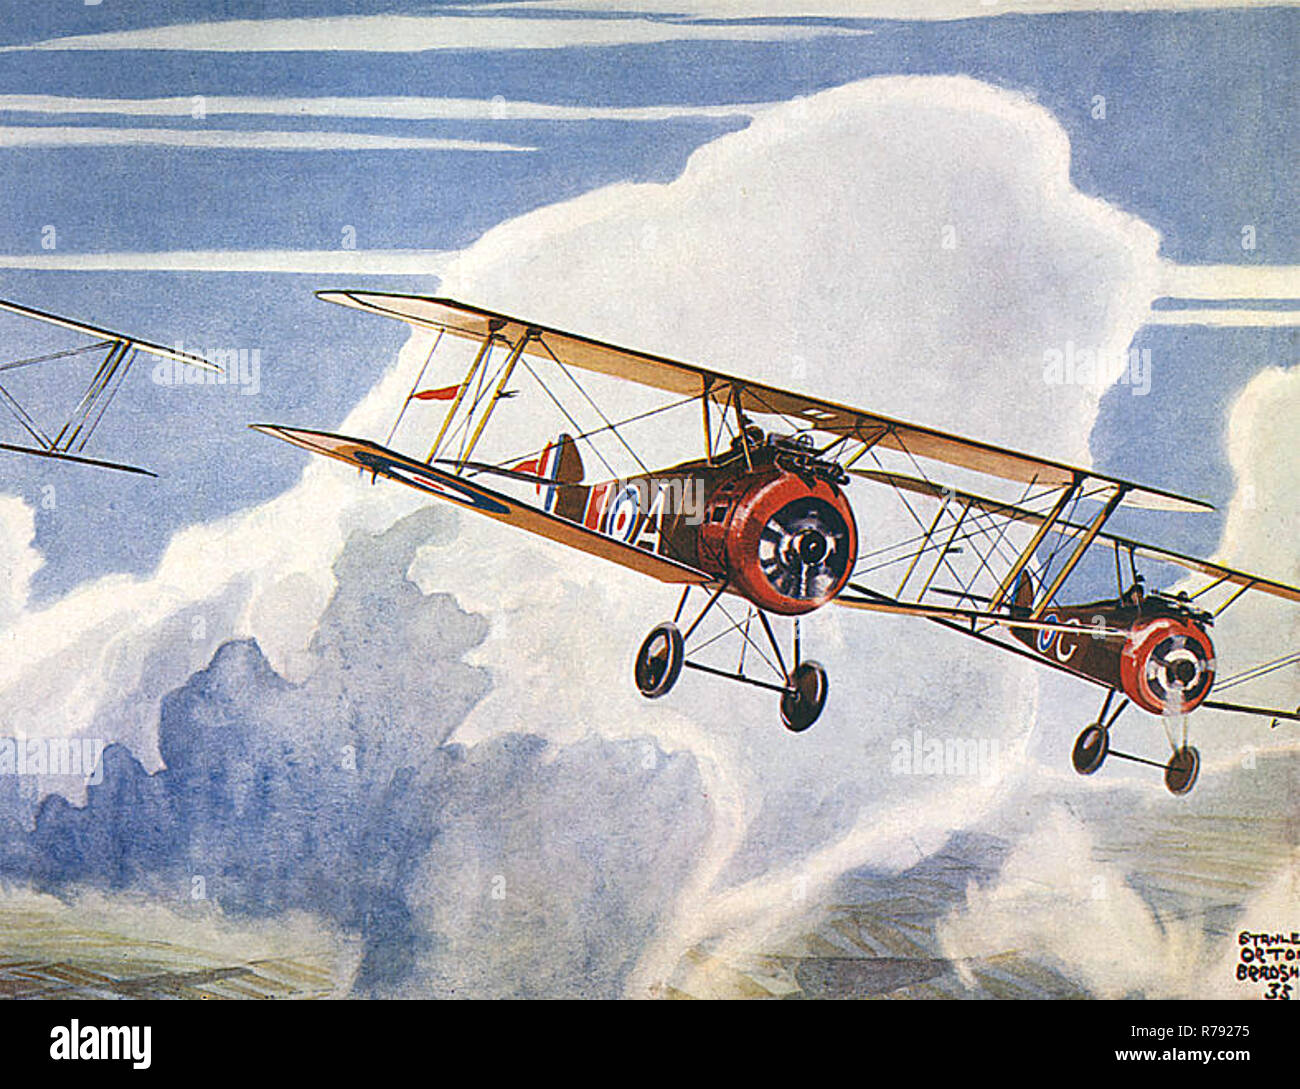 SOPWITH CAMELS Première Guerre mondiale d'avions de chasse en formation dans une peinture 1938 Banque D'Images